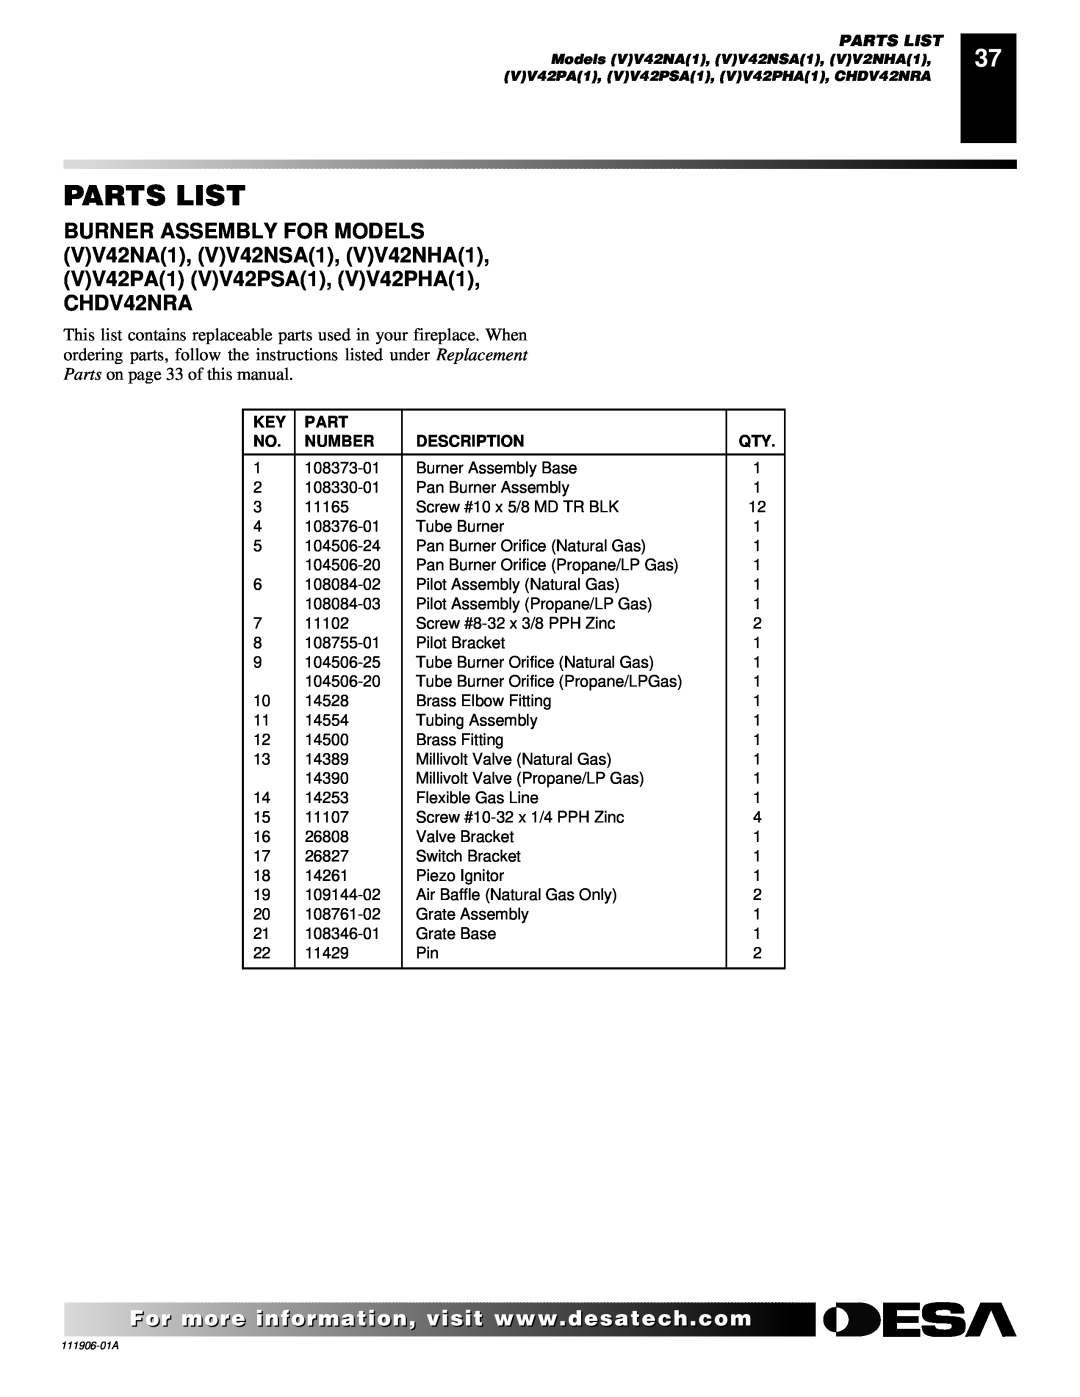 Desa (V)V42NA(1) installation manual Parts List, Number, Description 